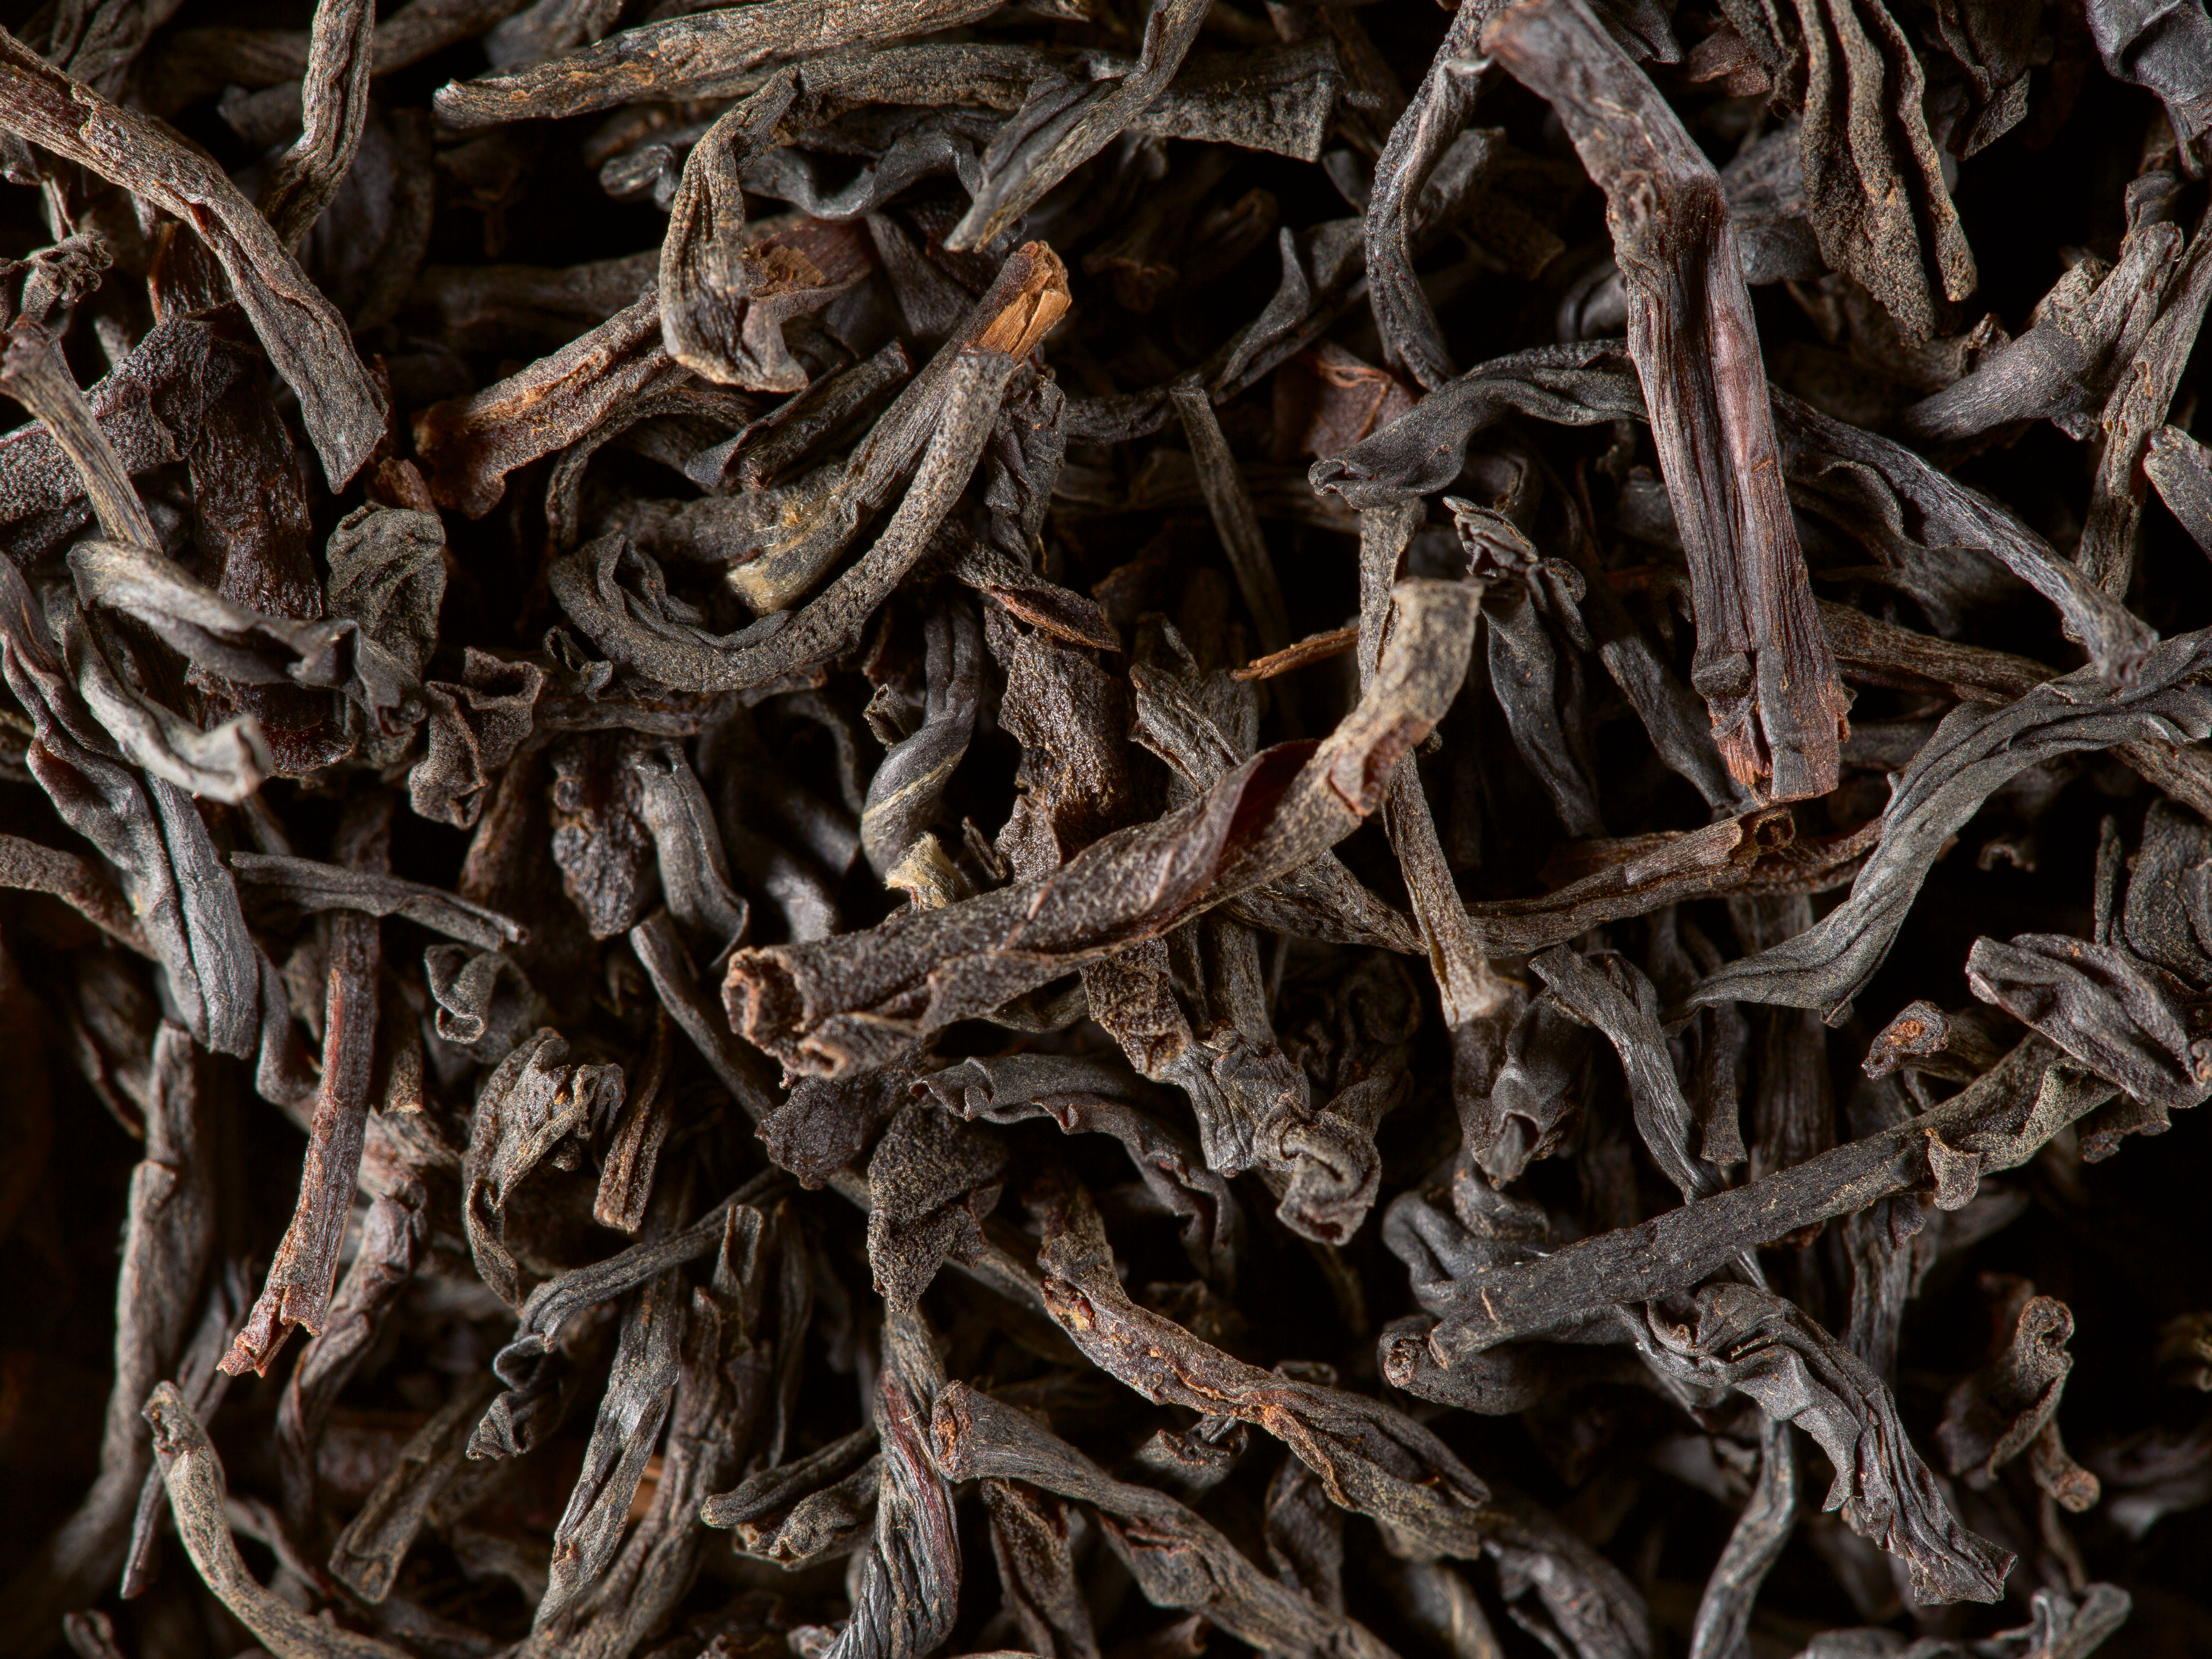 Τσάι Dammann Ceylan 24 Cristal® tea bags, Μαύρο Αρωματικό Τσάι Σε Φακελάκι, 18-20-0001